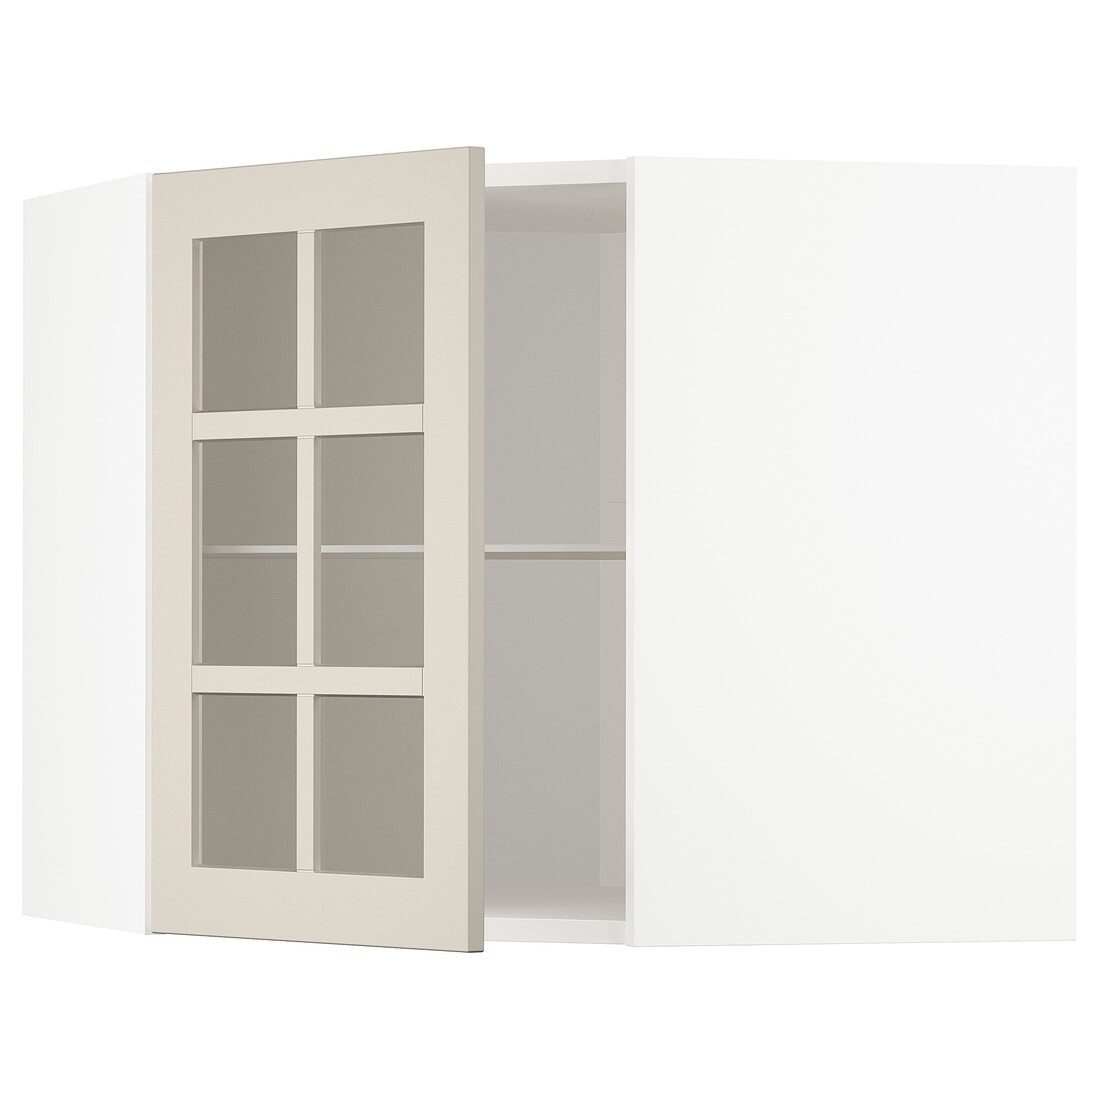 METOD МЕТОД Угловой настенный шкаф с полками / стеклянная дверь, белый / Stensund бежевый, 68x60 см